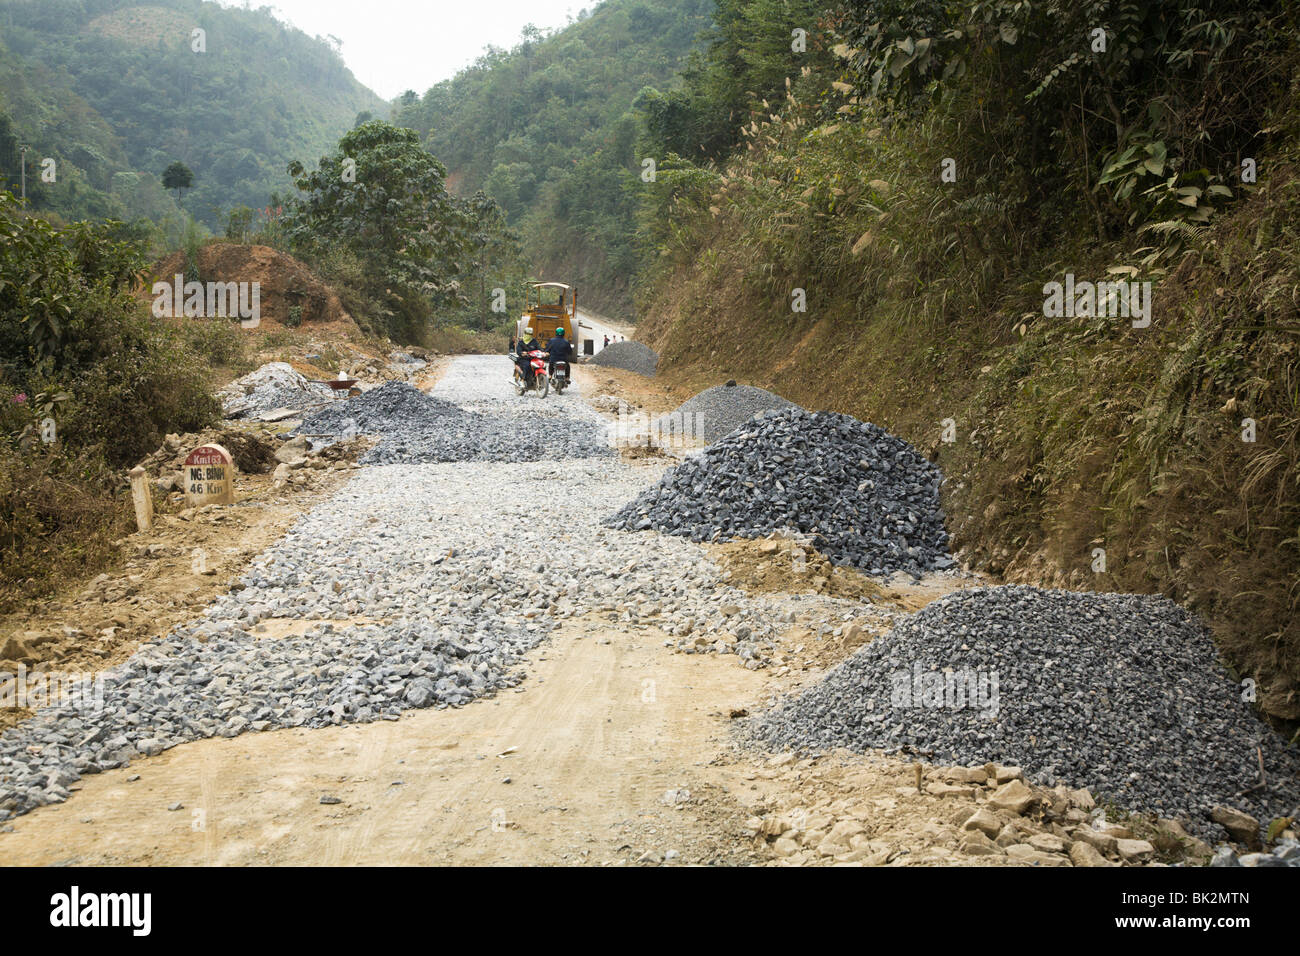 Progetto Roadbuilding tipico di tutto il Vietnam del nord dove si costruiscono nuove strade ovunque, questa in Cao Bang Provincia Foto Stock